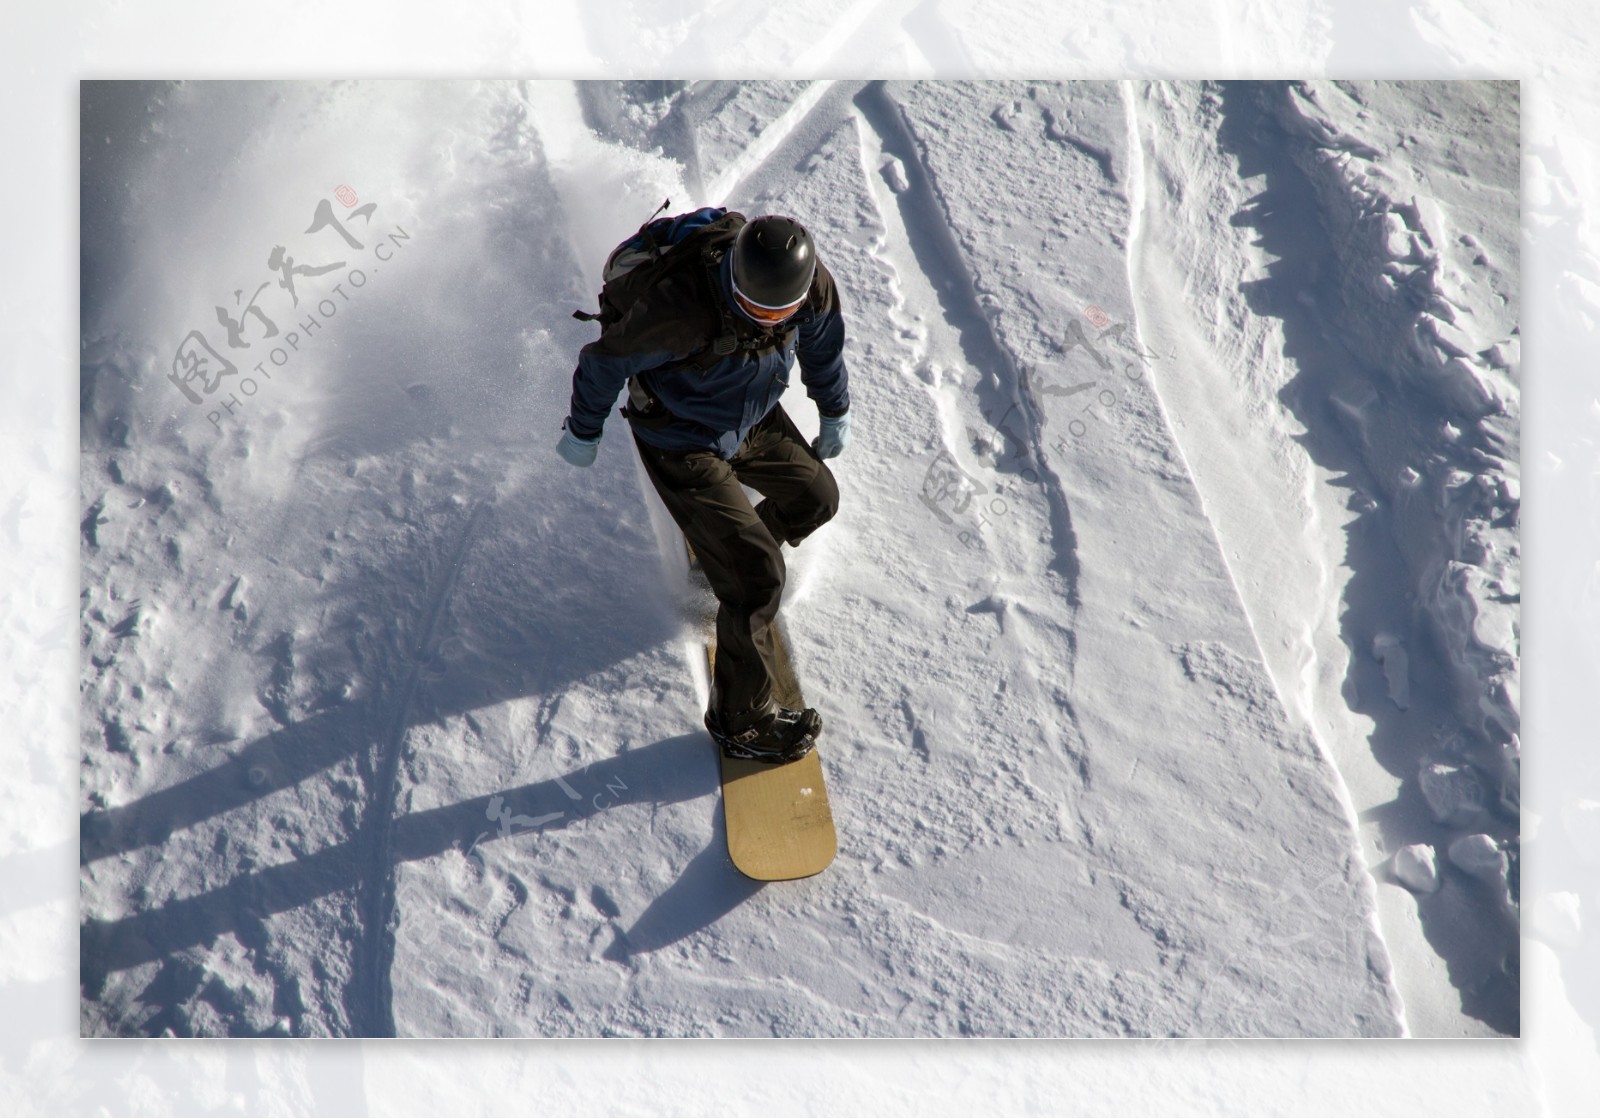 雪地上滑雪的人图片